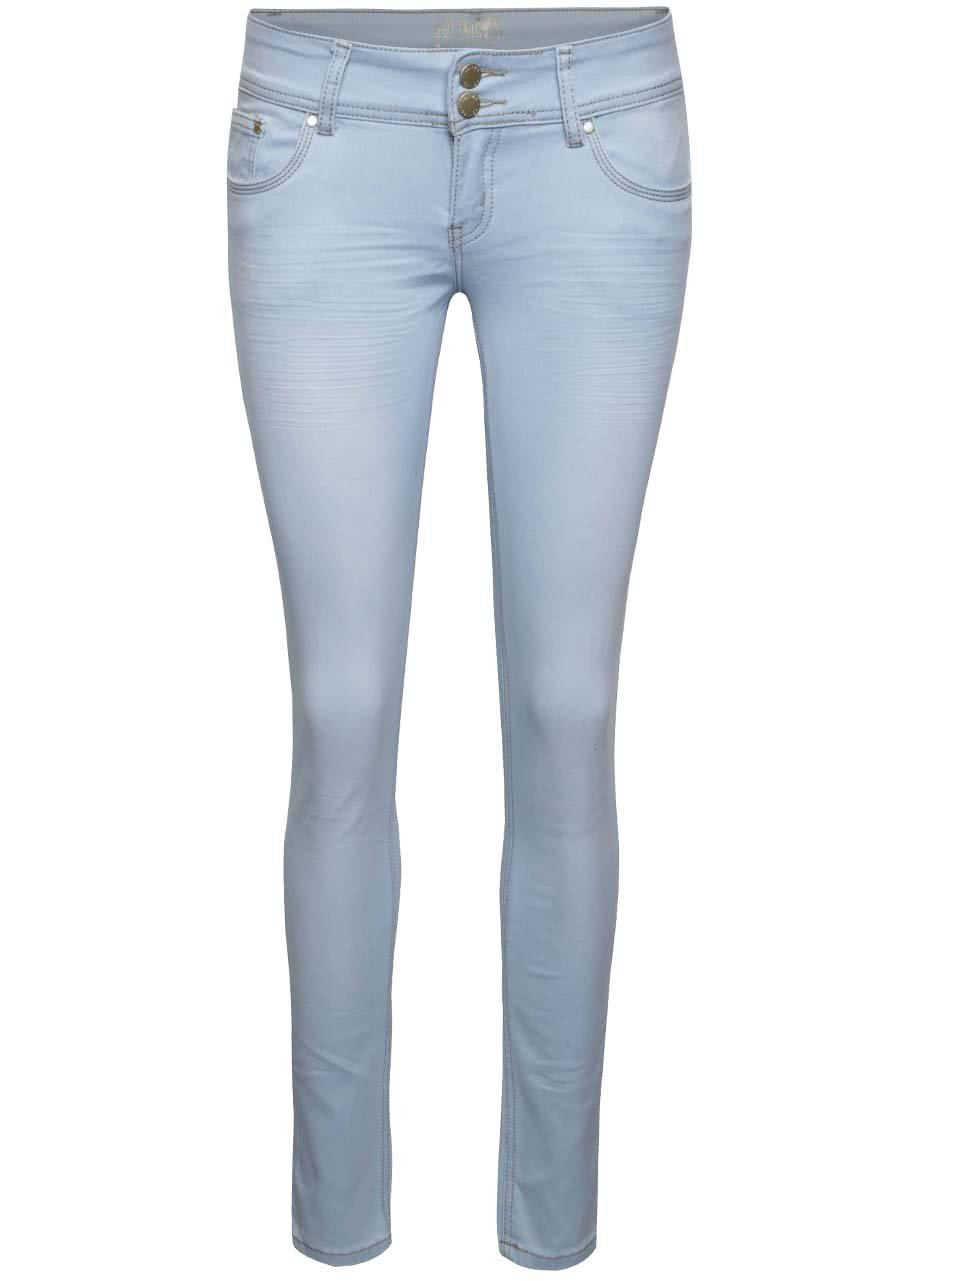 Světle modré džíny s nízkým pasem Haily´s Kitty